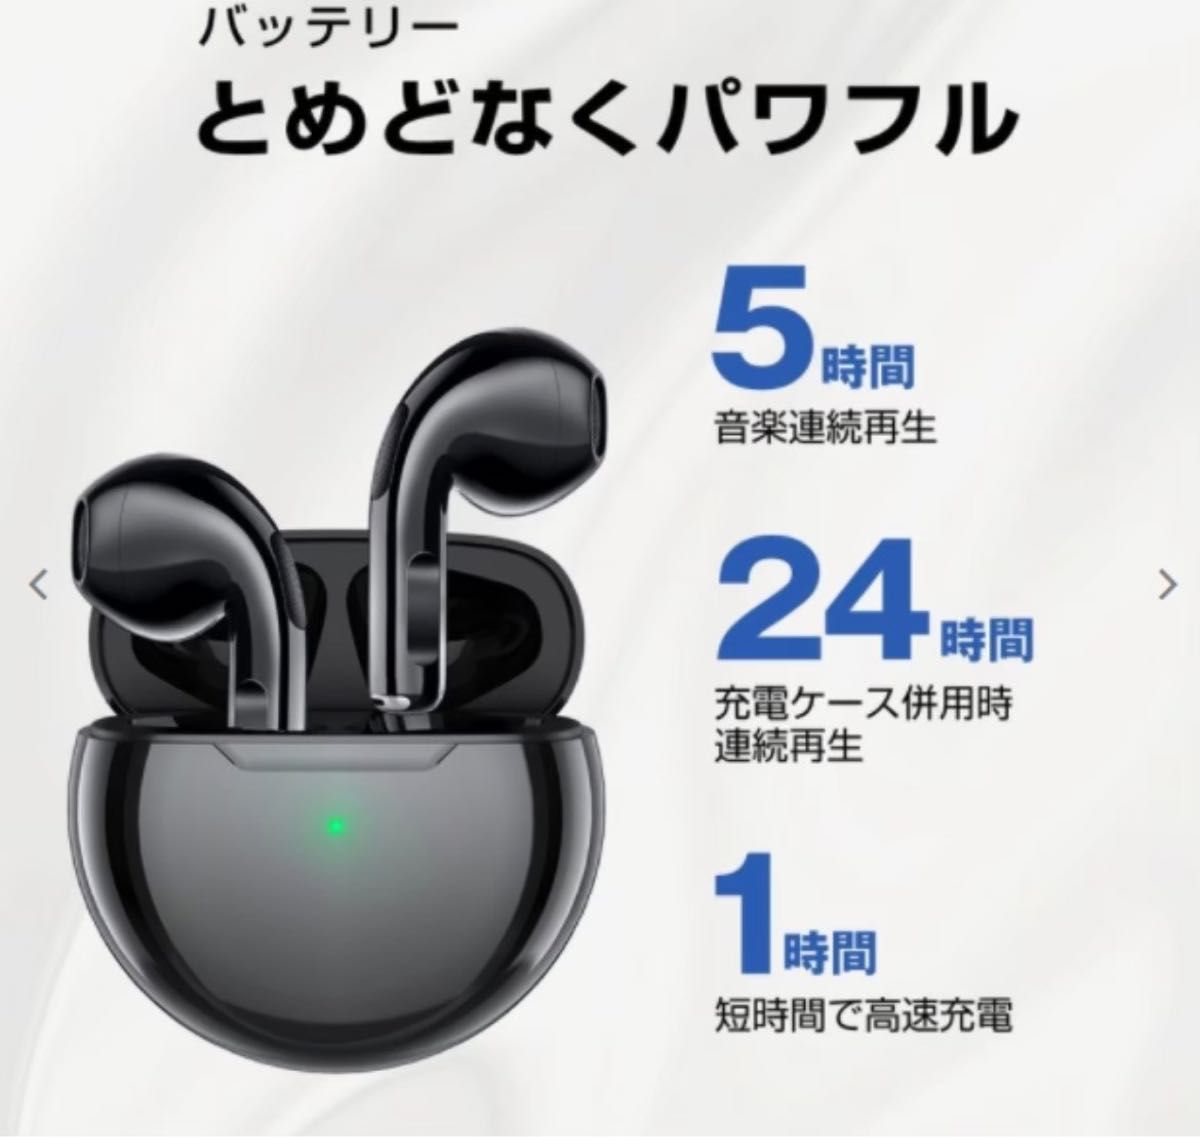 新生活応援！Air Pro6【グリーン】箱無し価格でお得！ ワイヤレスイヤホン Bluetooth ノイズキャンセリング 高音質 